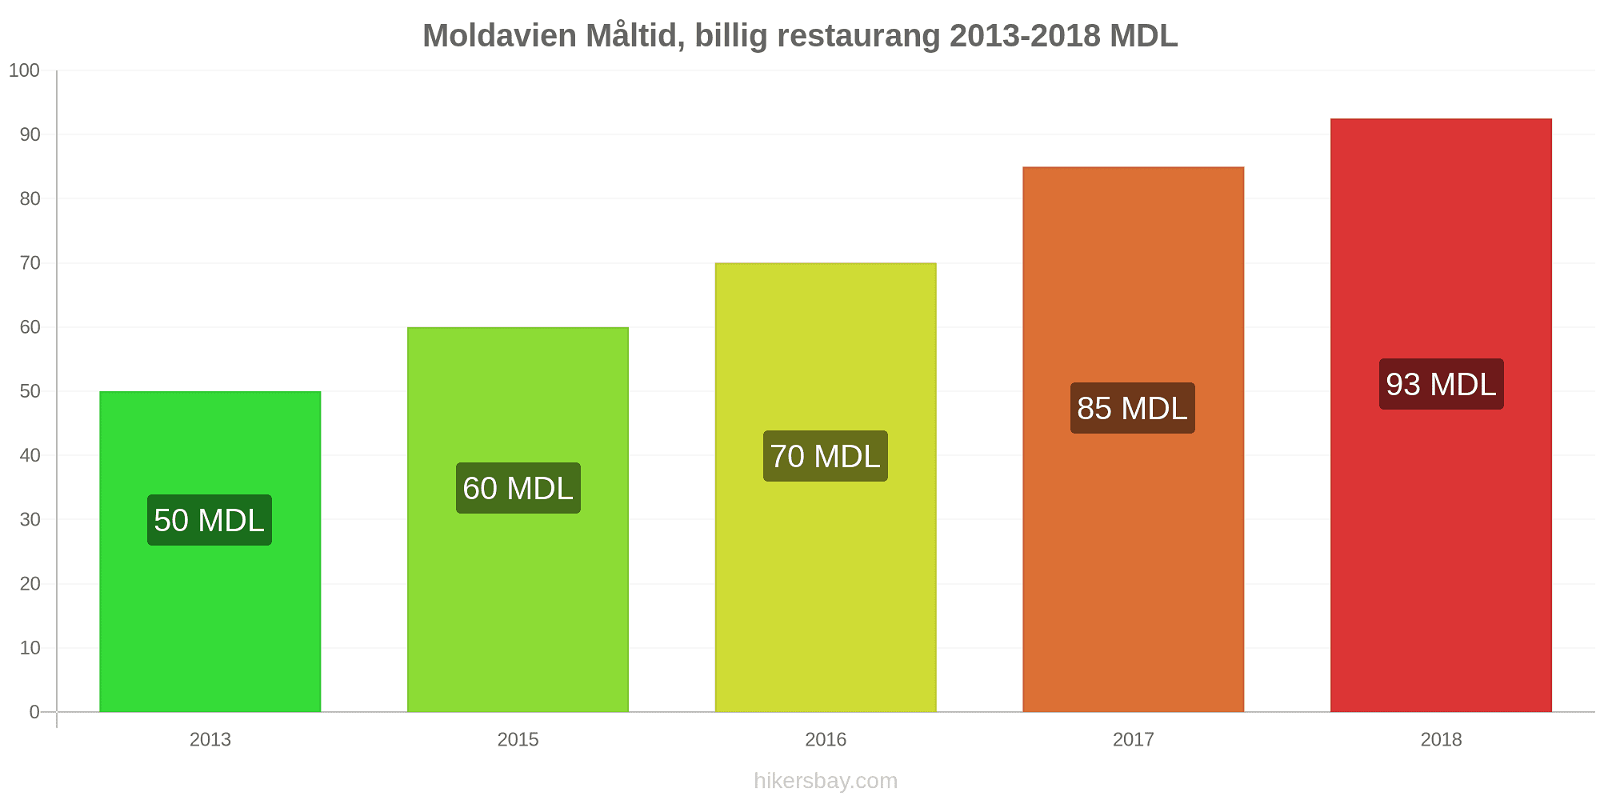 Moldavien prisändringar Måltid i en billig restaurang hikersbay.com